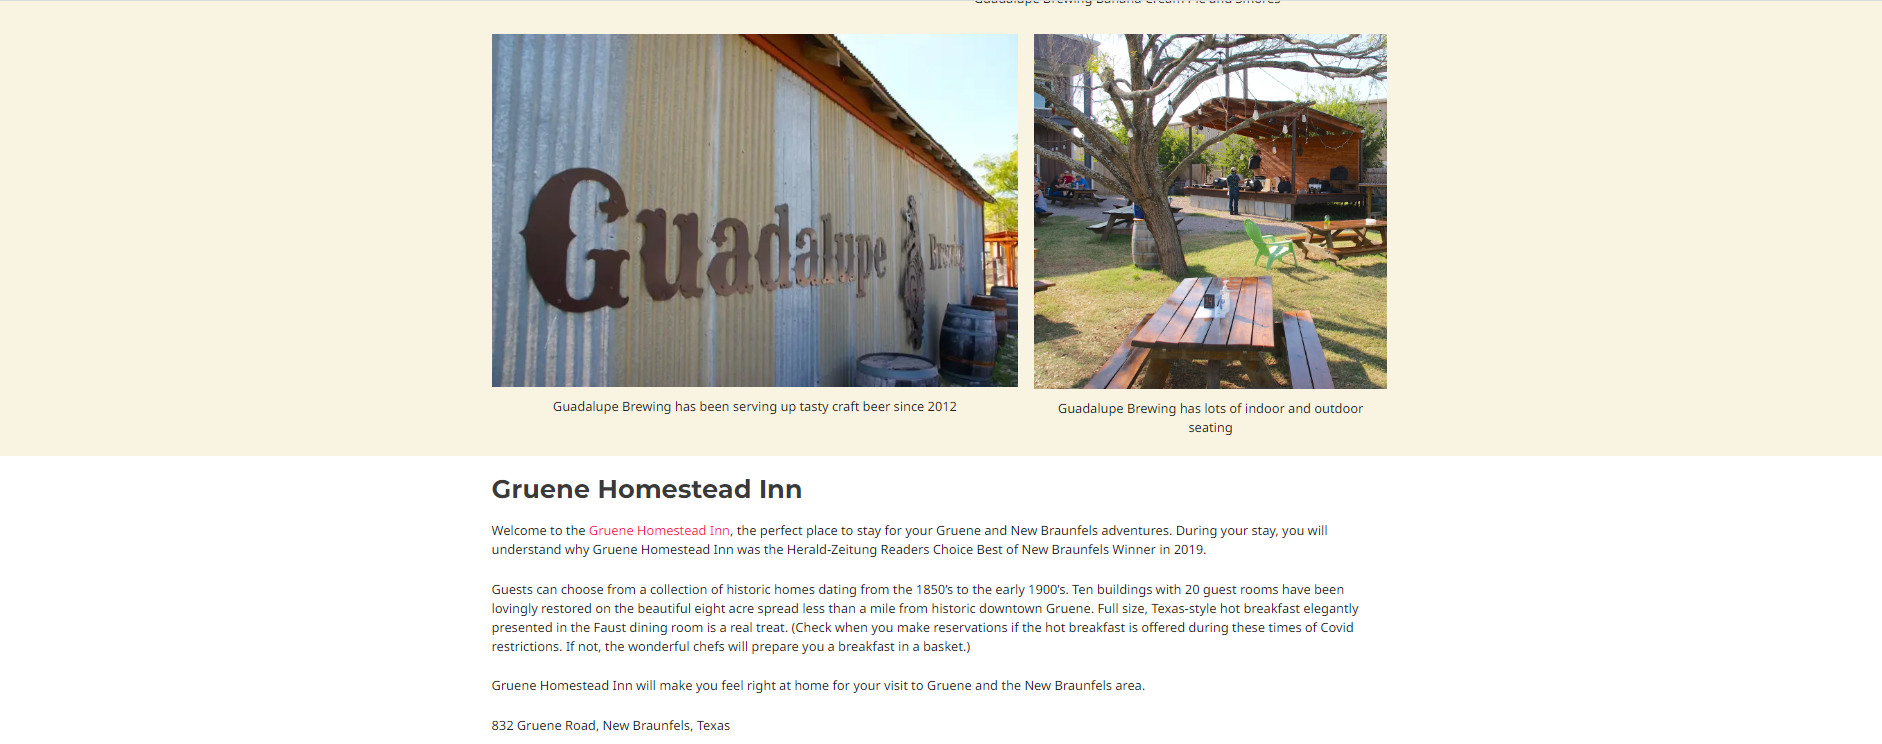 Gruene Homestead Inn